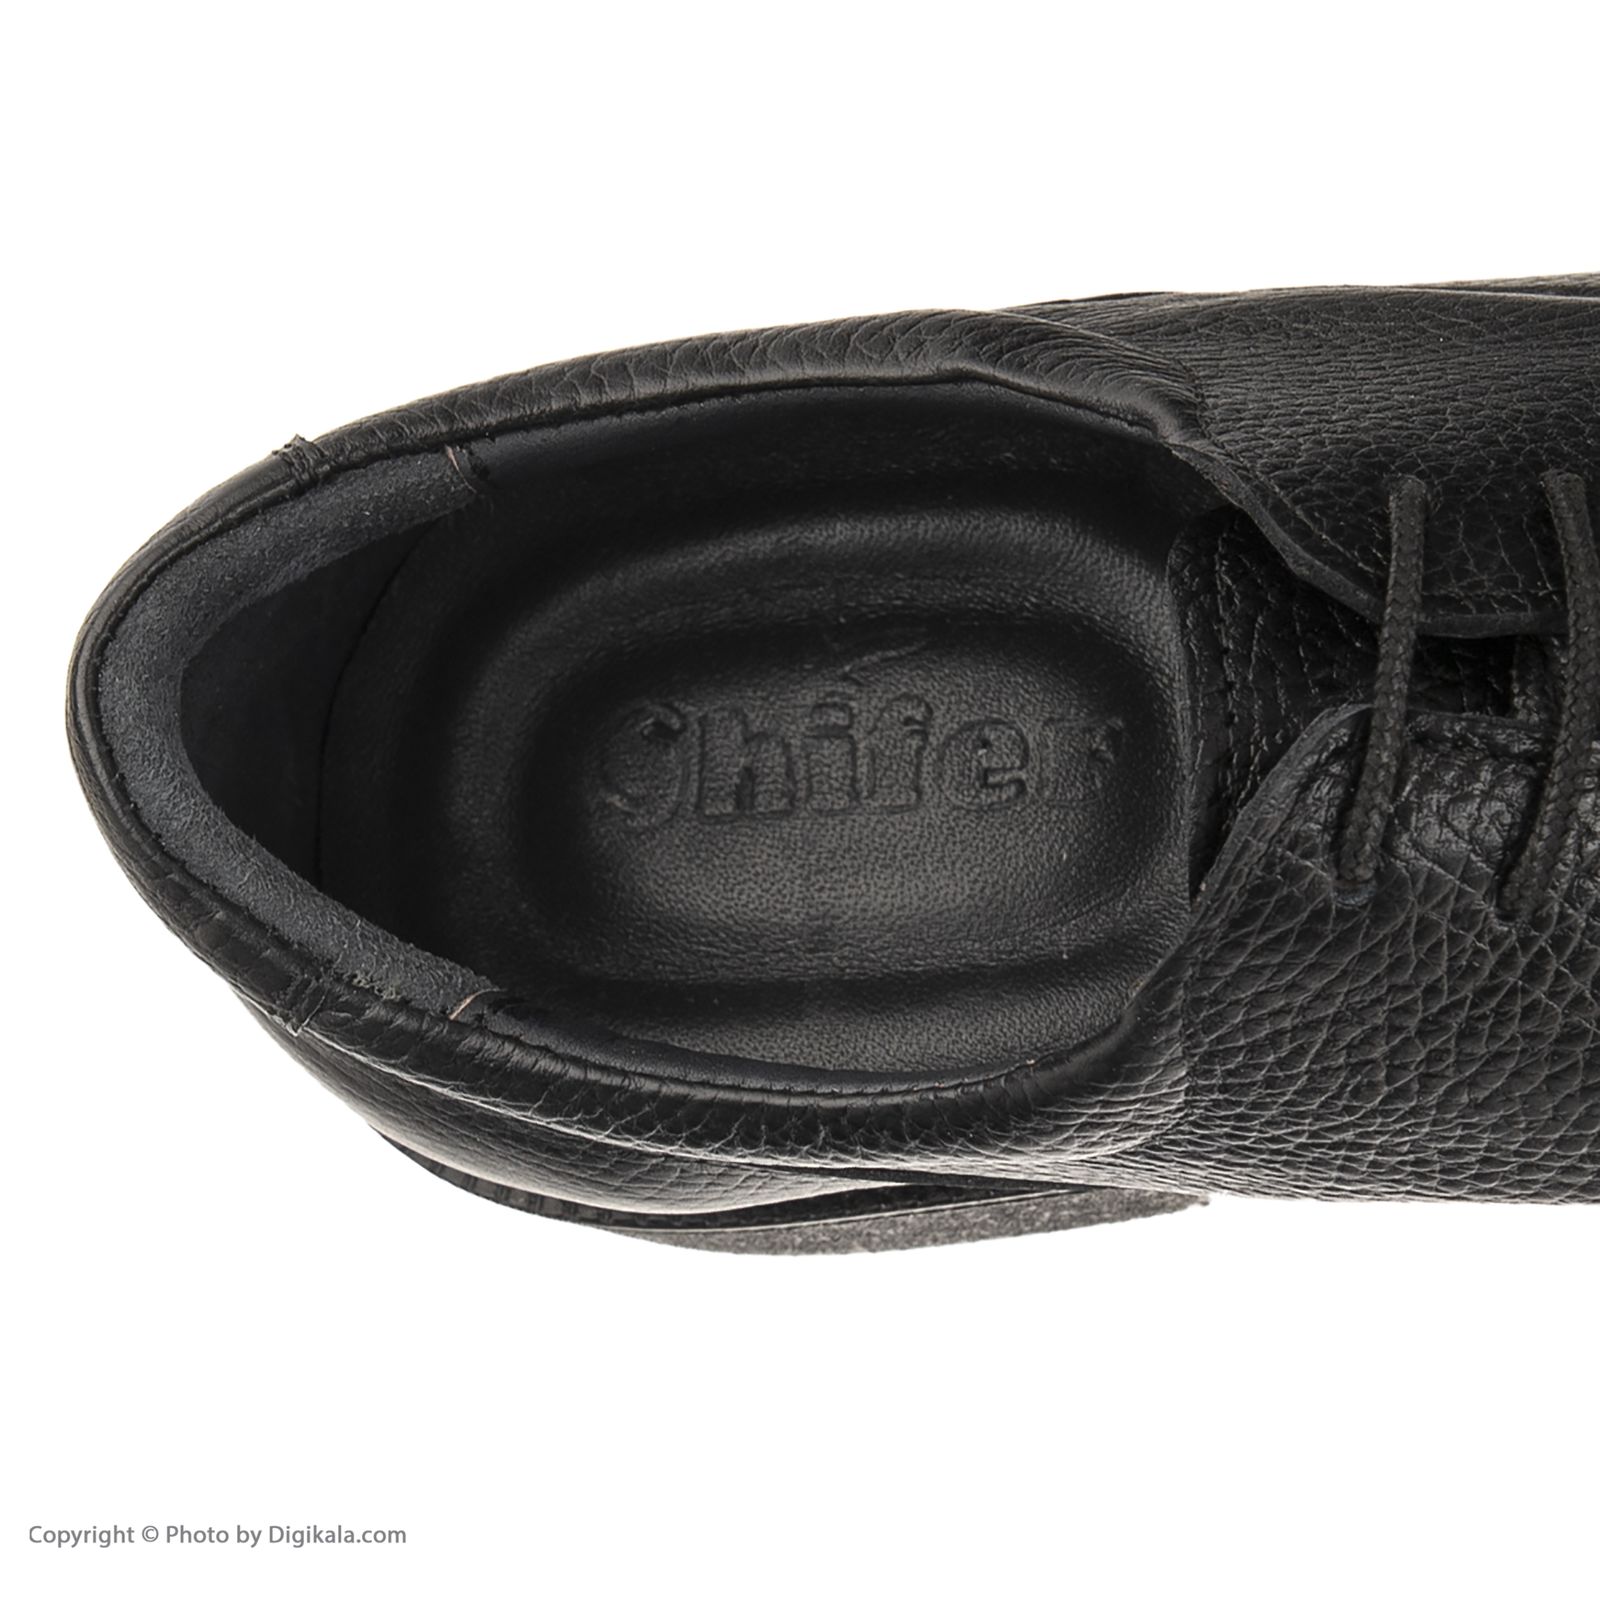 کفش مردانه شیفر مدل 7312g503101101 -  - 7